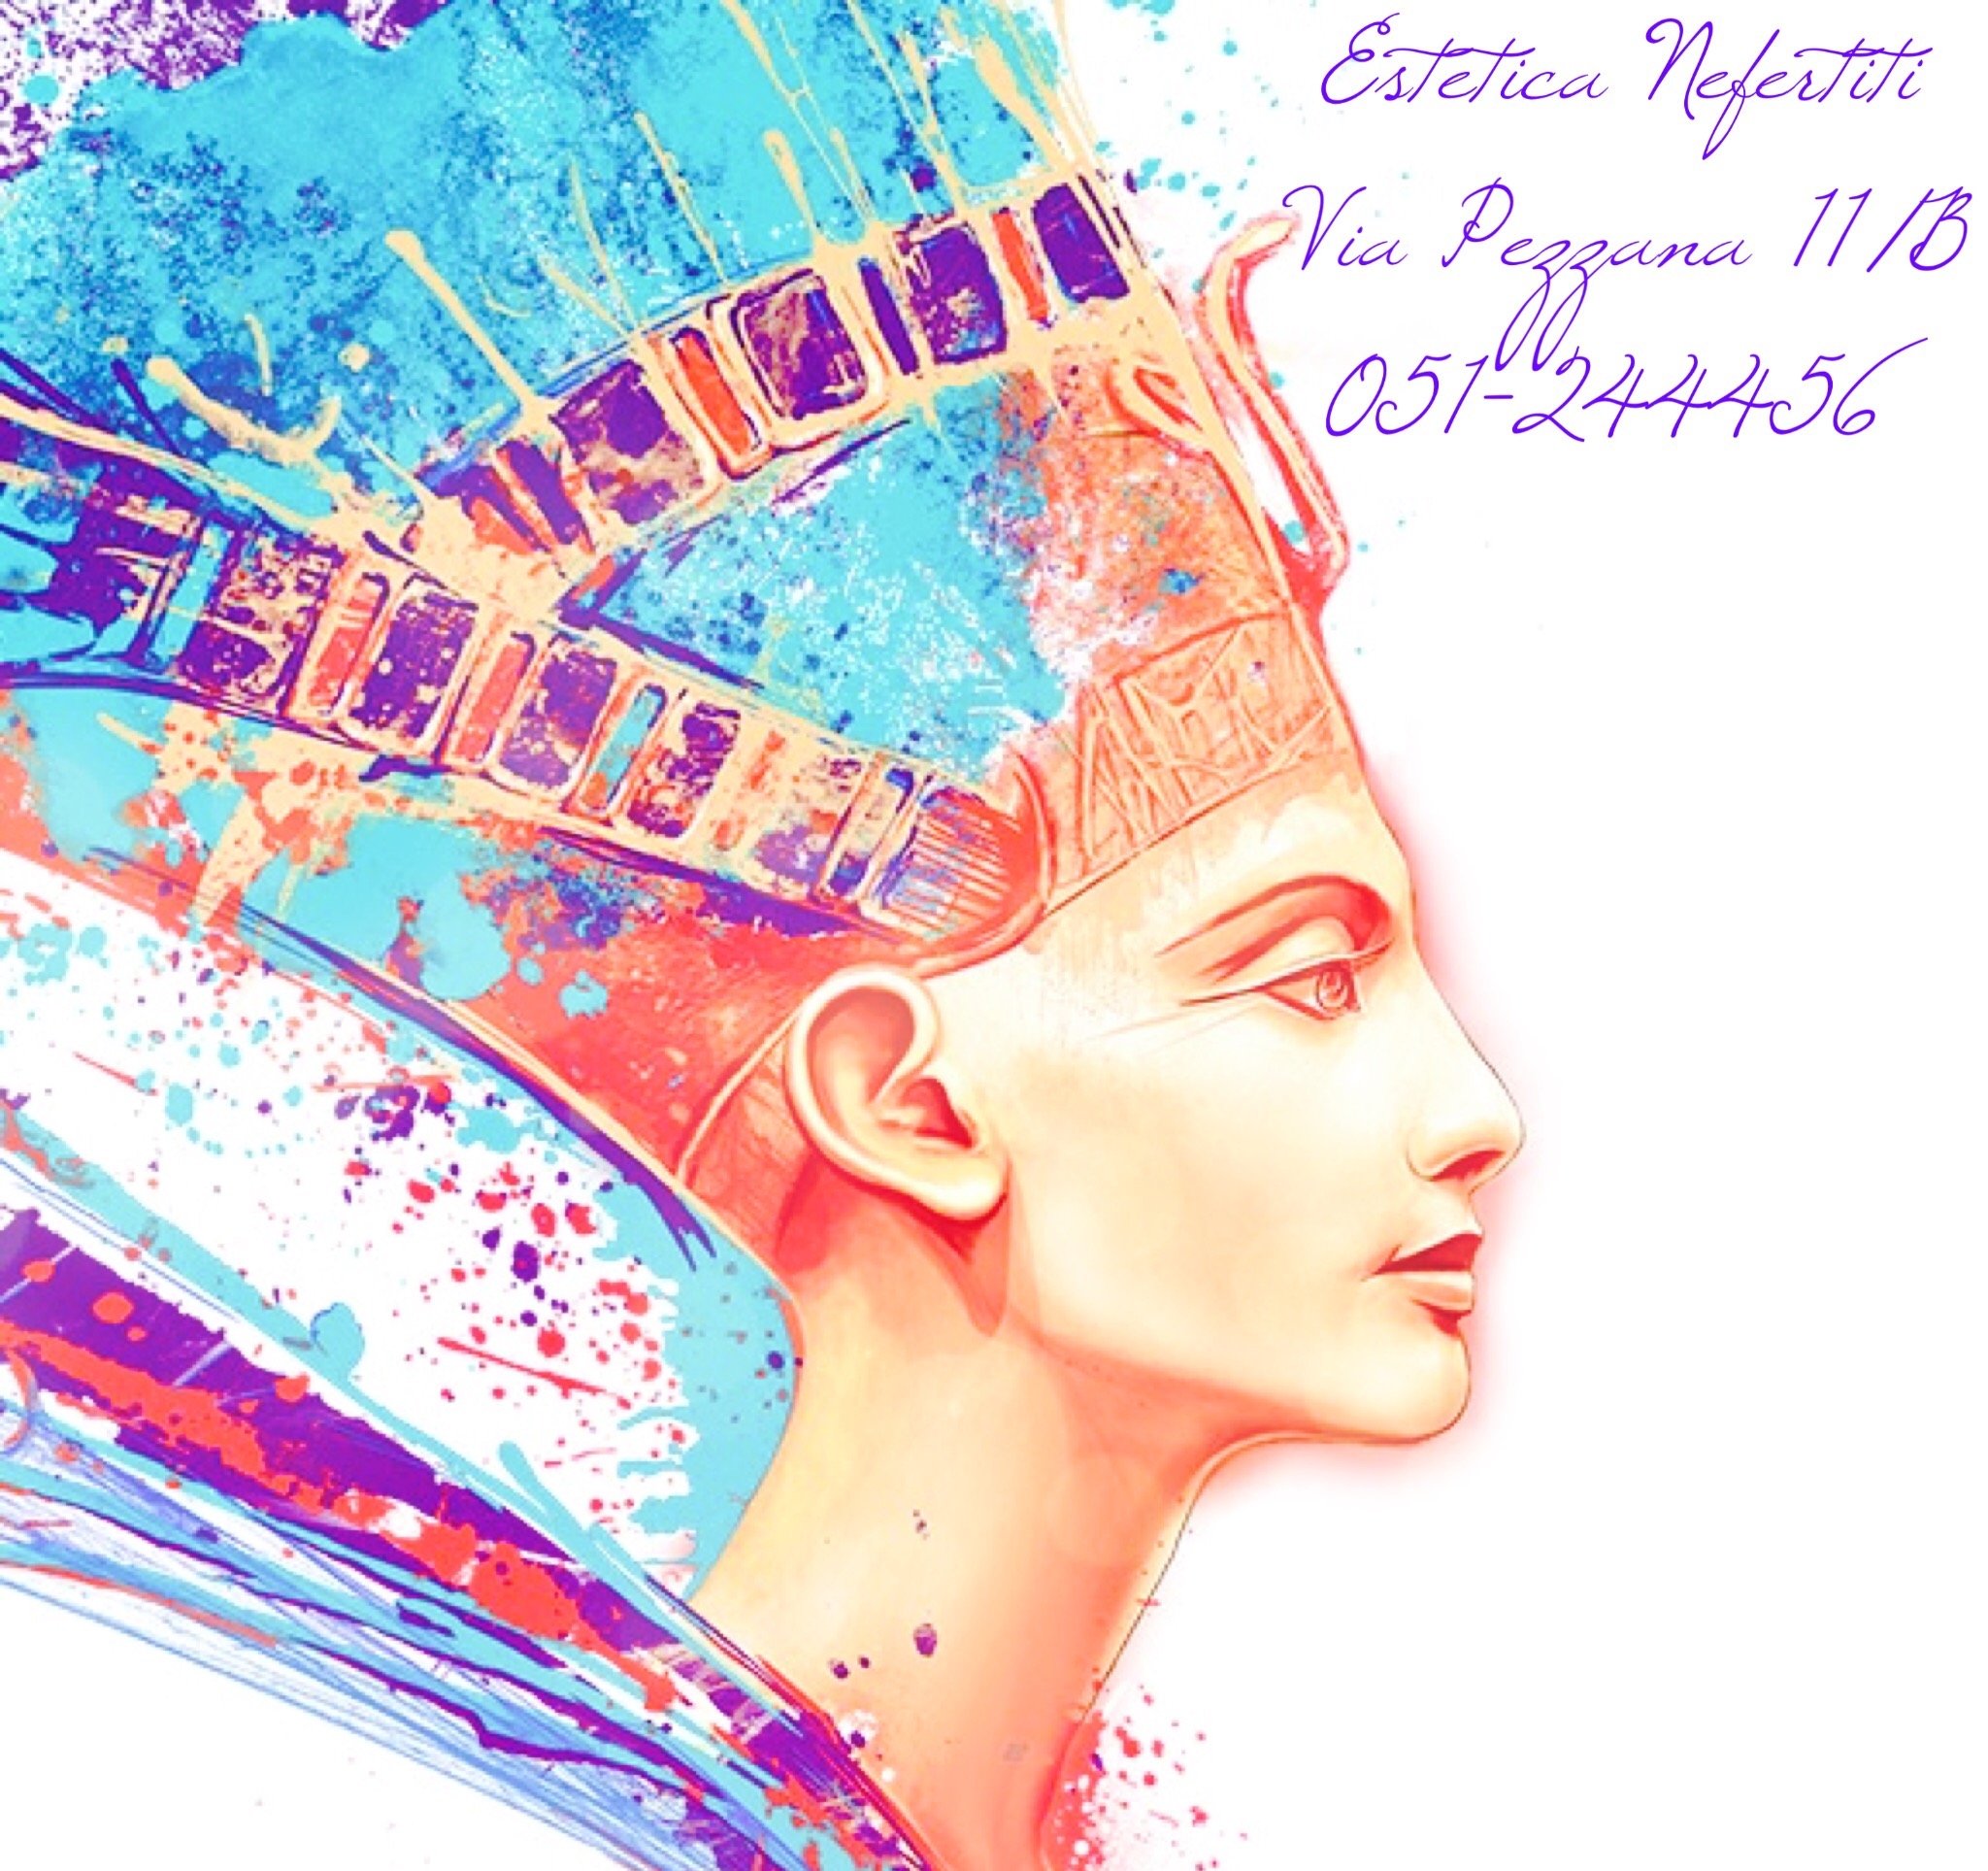 Estetica Nefertiti